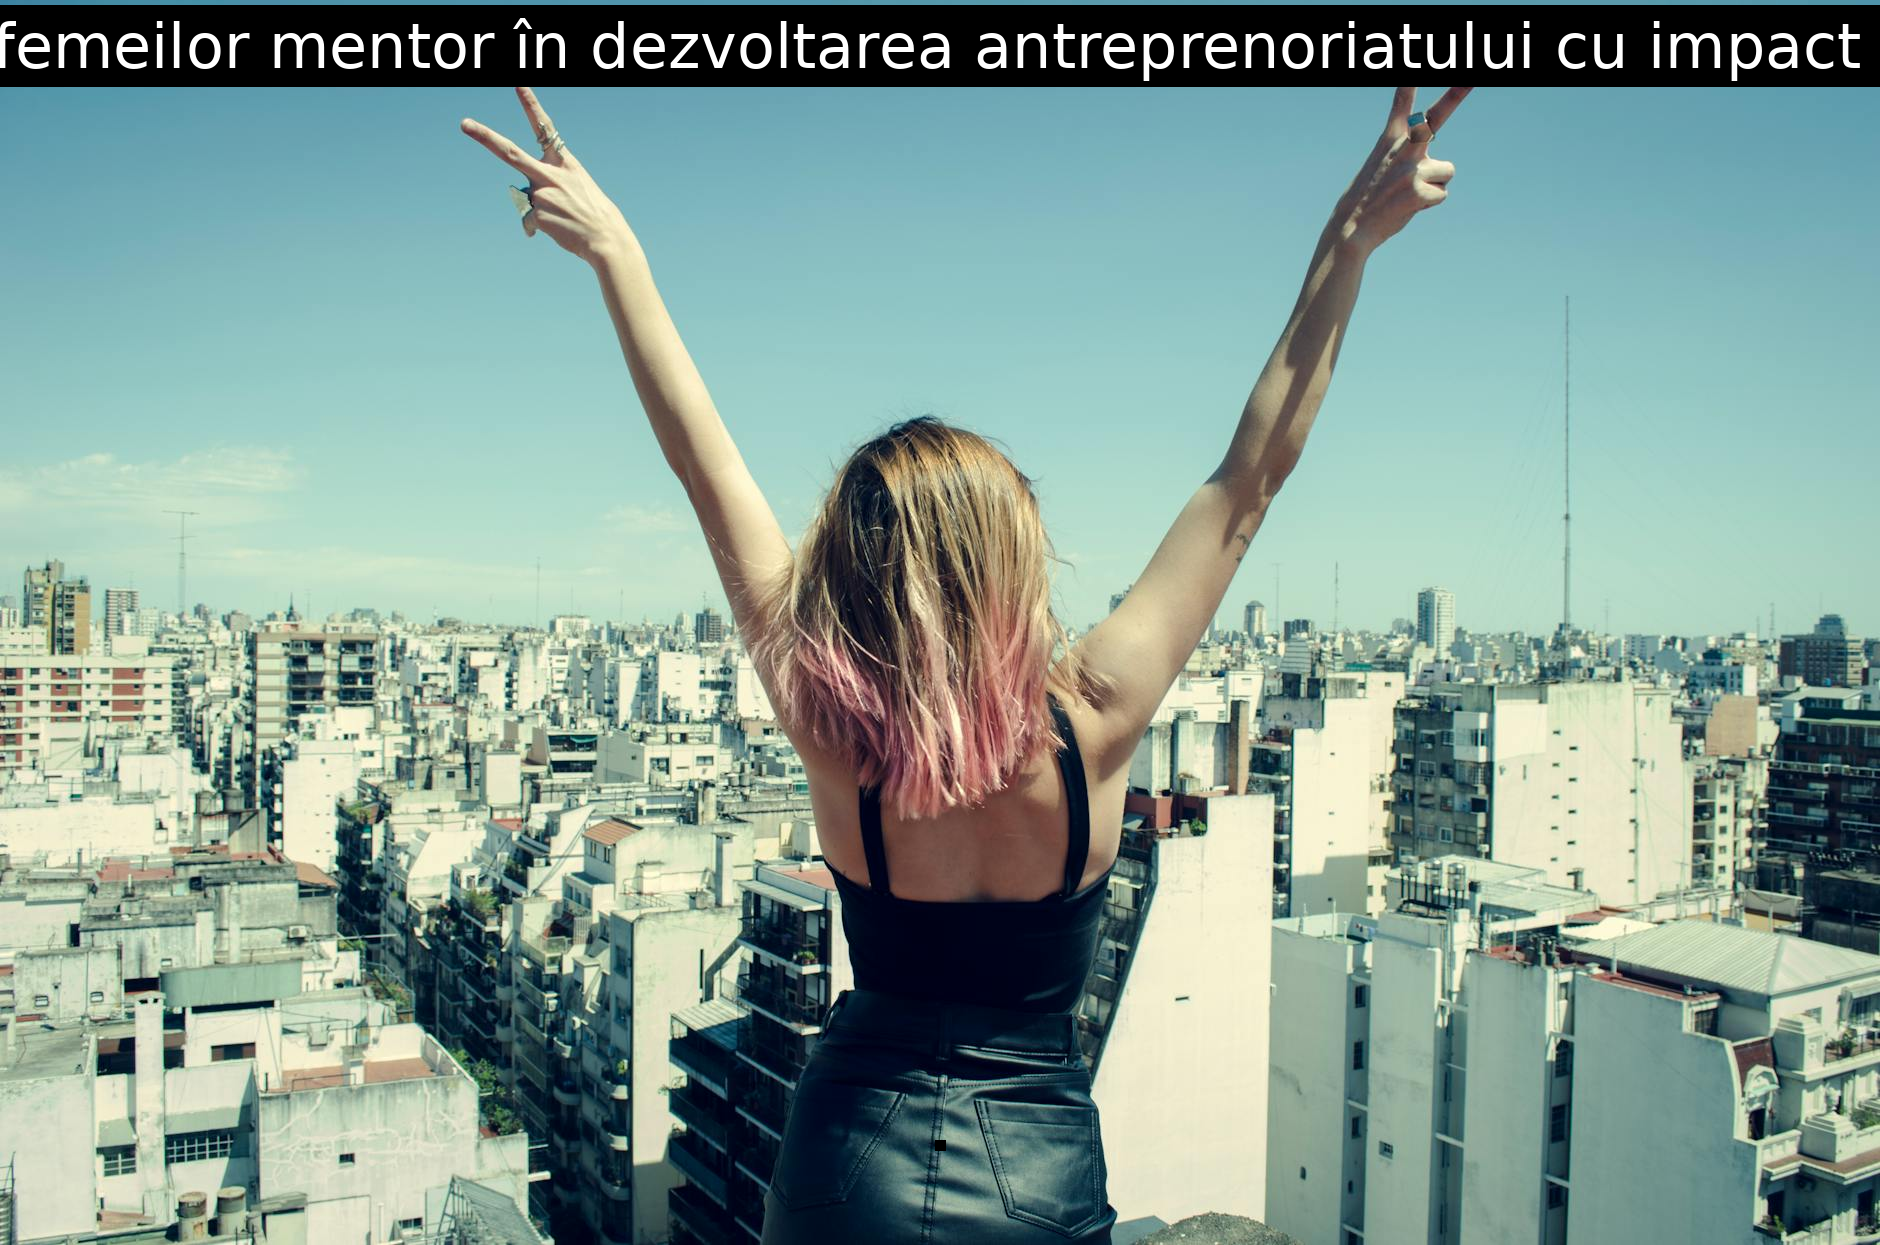 Rolul femeilor mentor în dezvoltarea antreprenoriatului cu impact social